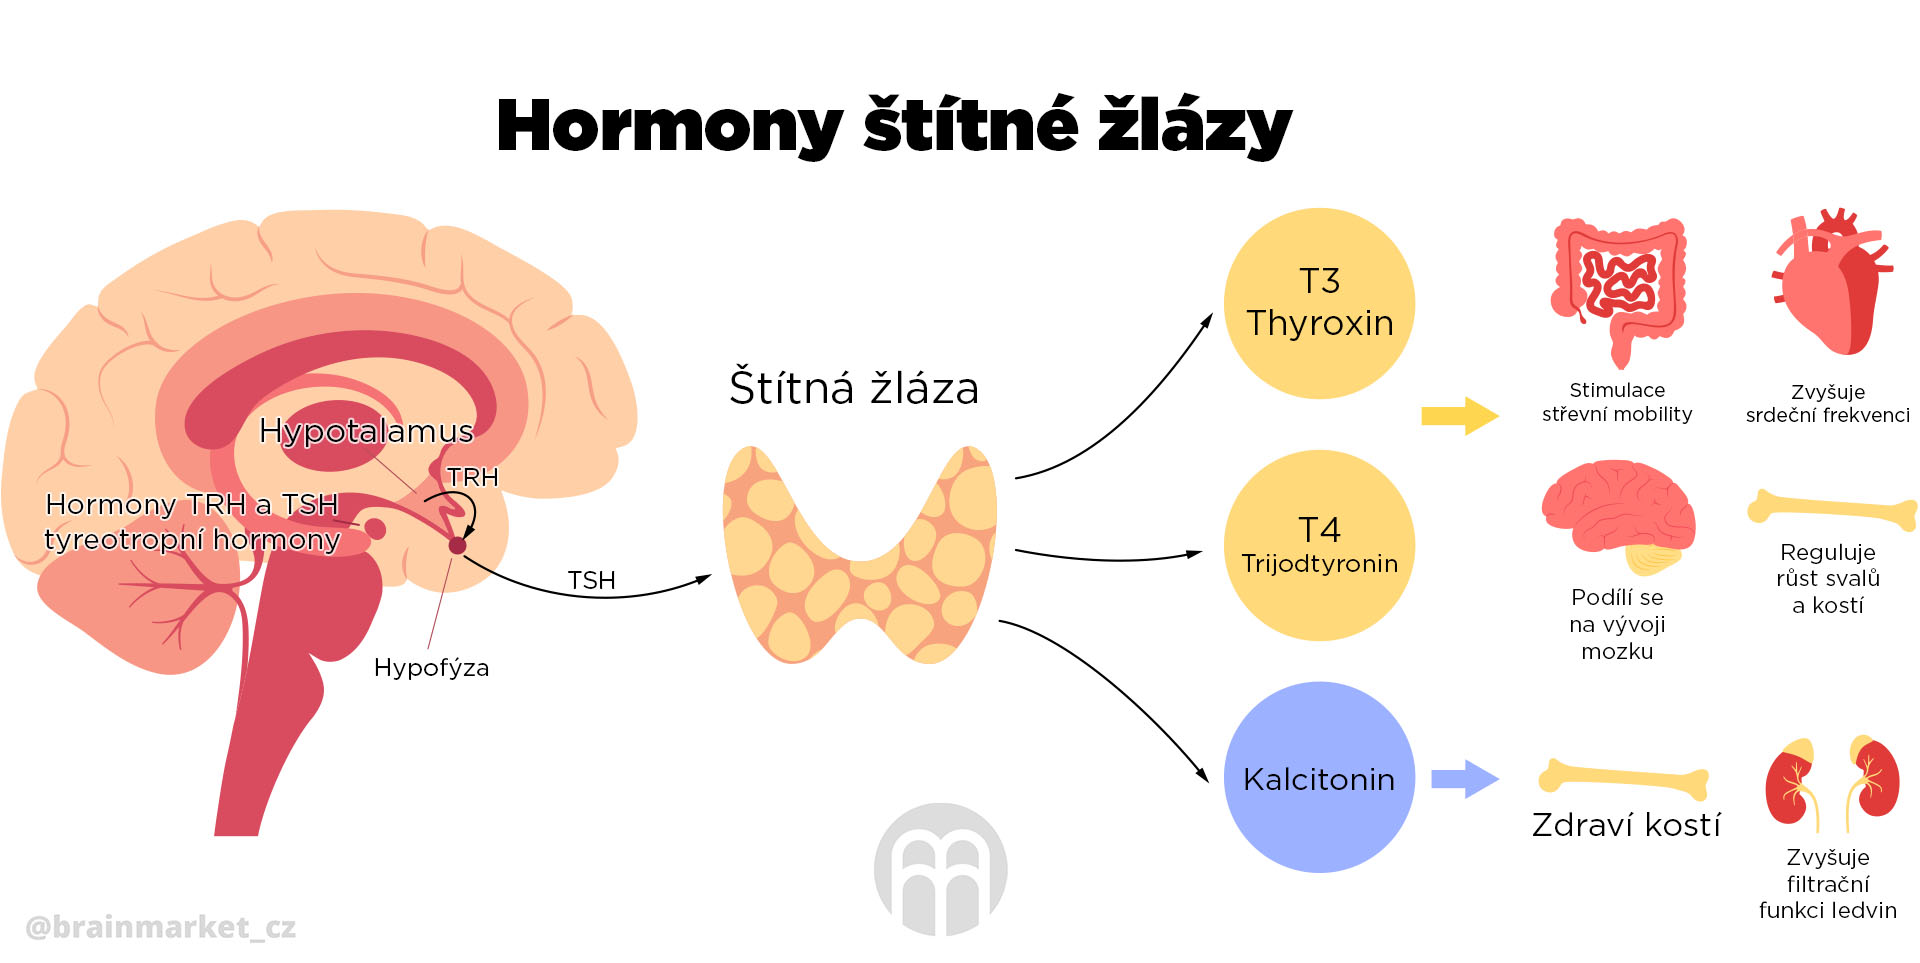 hormony_stitne_zlazy_infografika_brainmarket_CZ